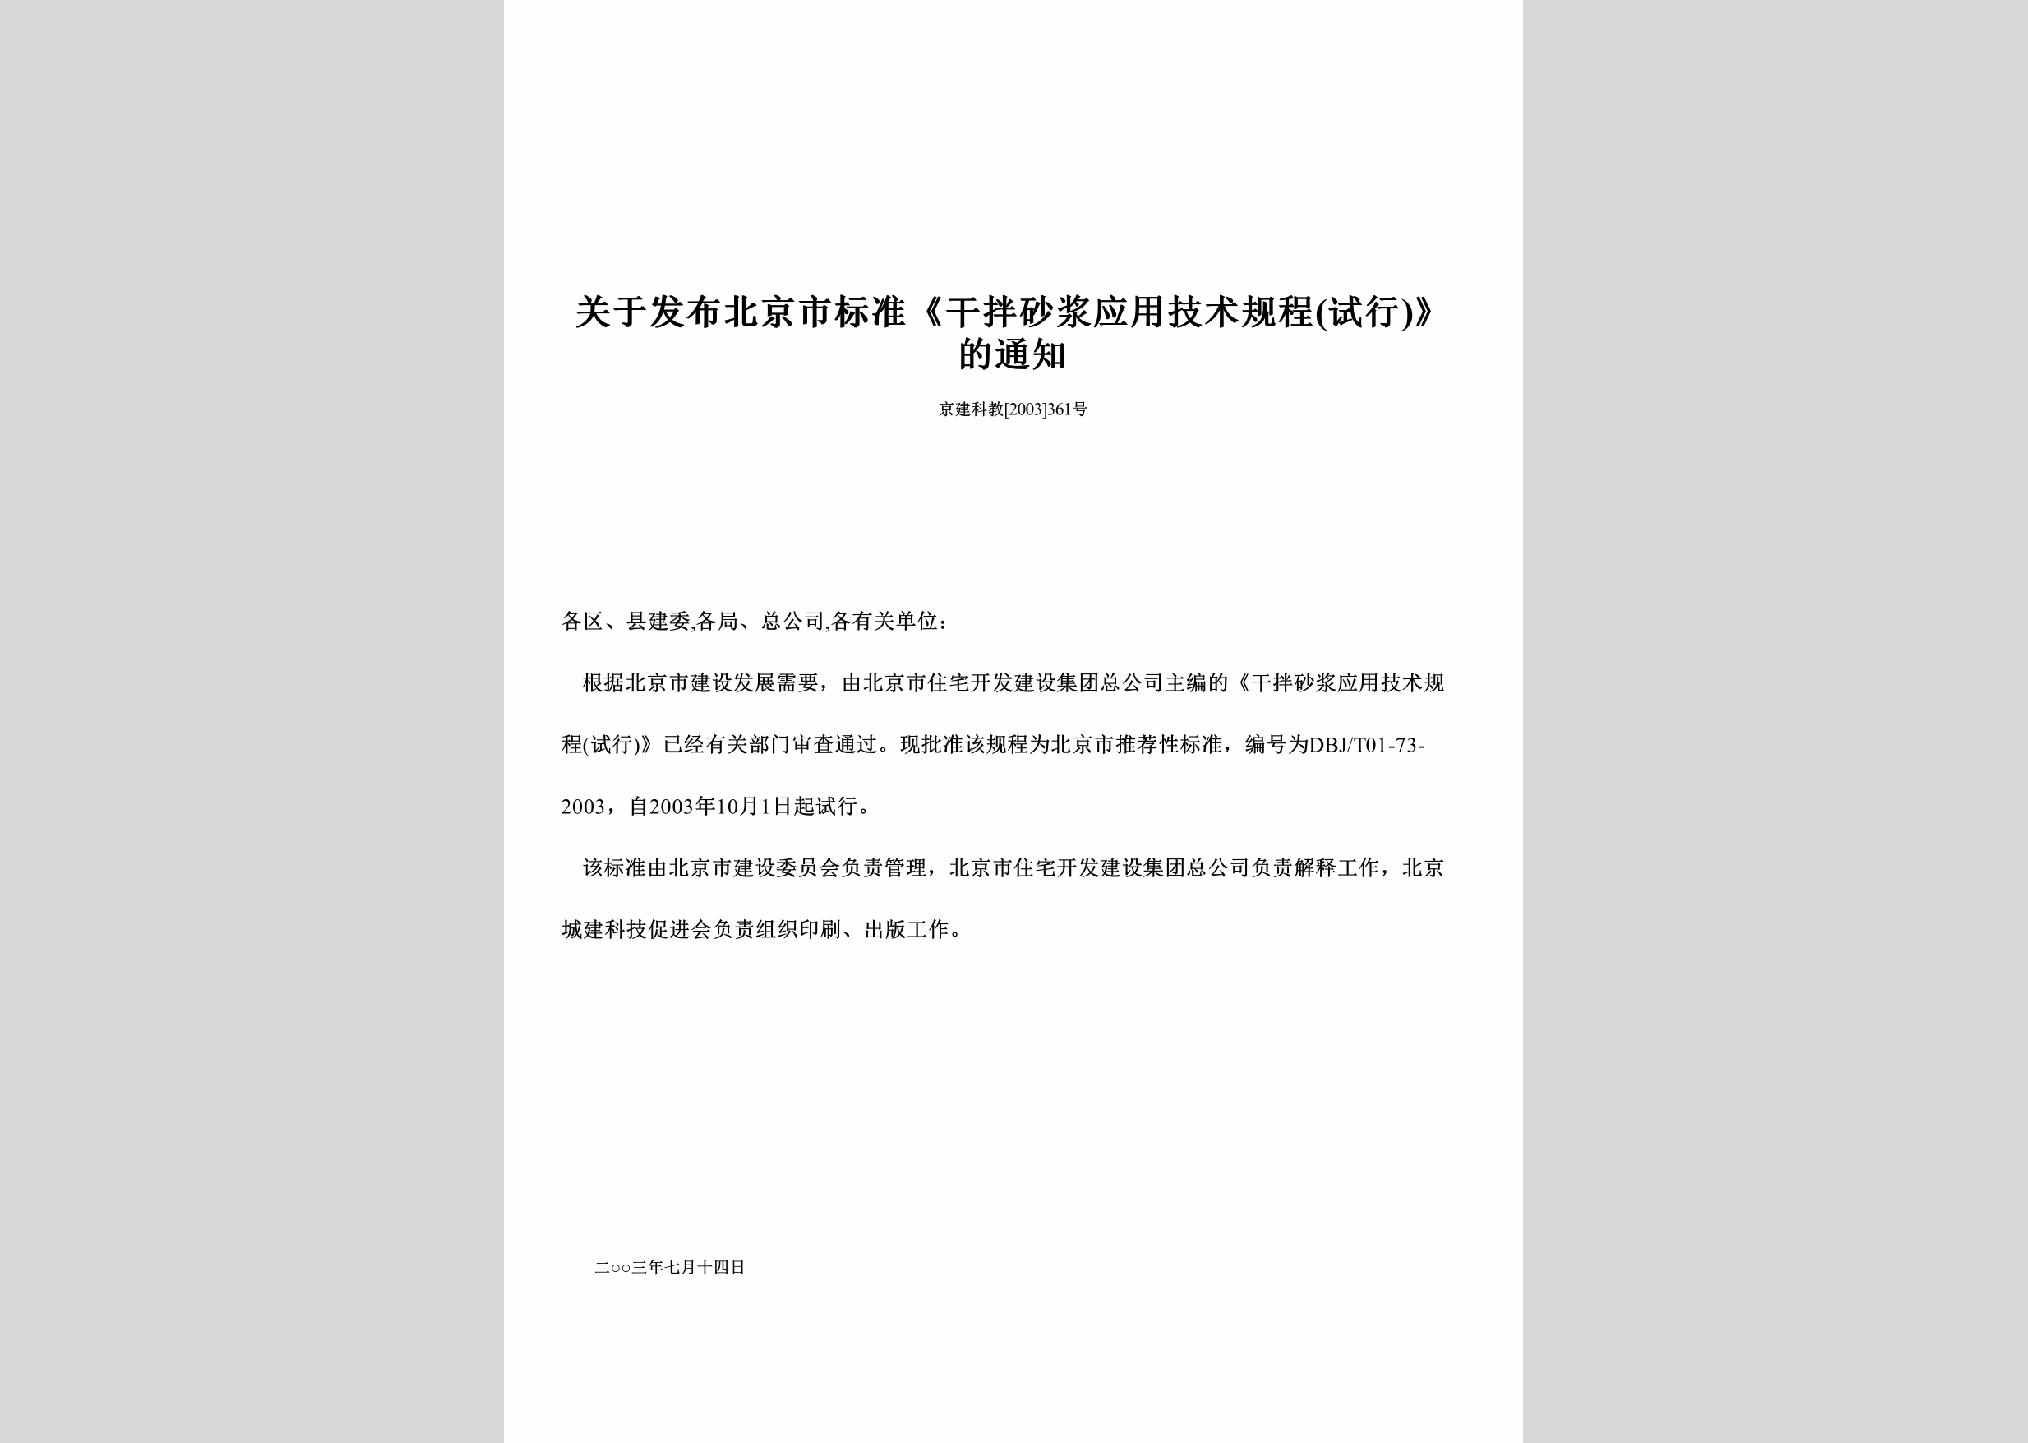 京建科教[2003]361号：关于发布北京市标准《干拌砂浆应用技术规程(试行)》的通知